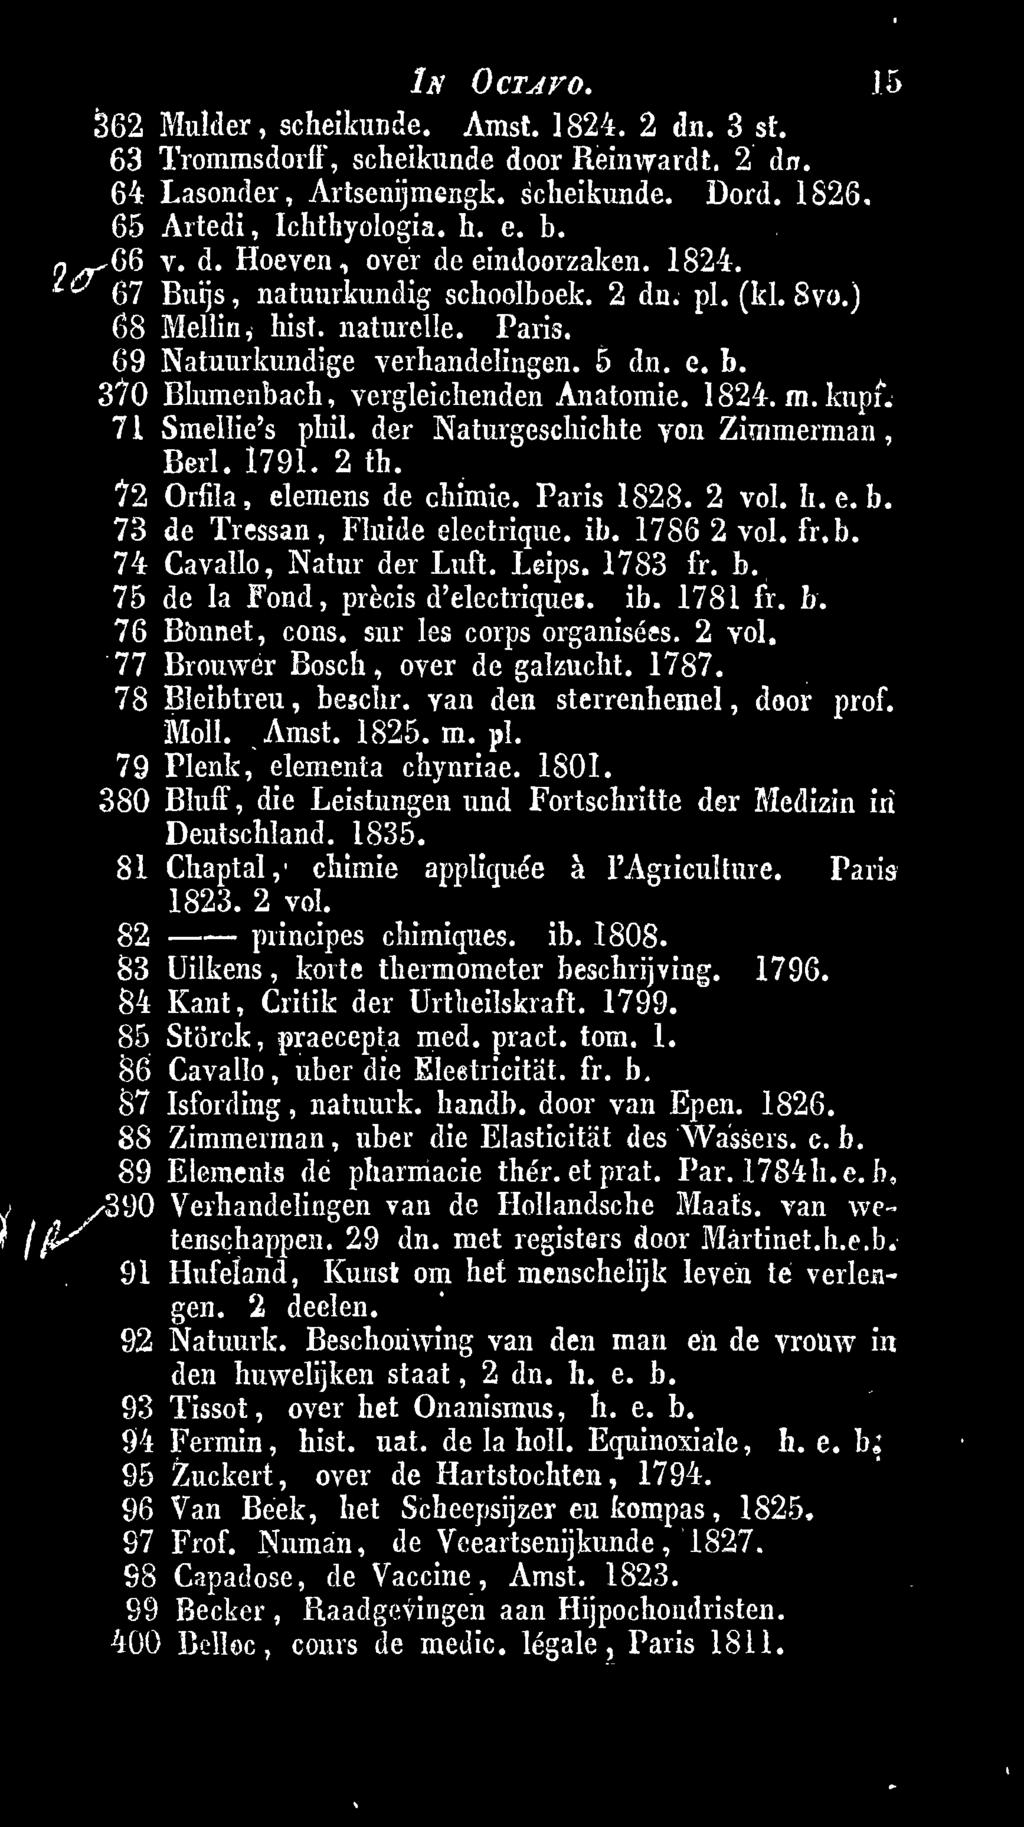 77 Brouwer Bosch, over de galzucht. 1787. 78 Bleibtreu, beschr. Yan den sterrenhemel, door prof. Moll. Amst. 1825. m. pi. 79 Plenk, elementa chynriae. 1801.